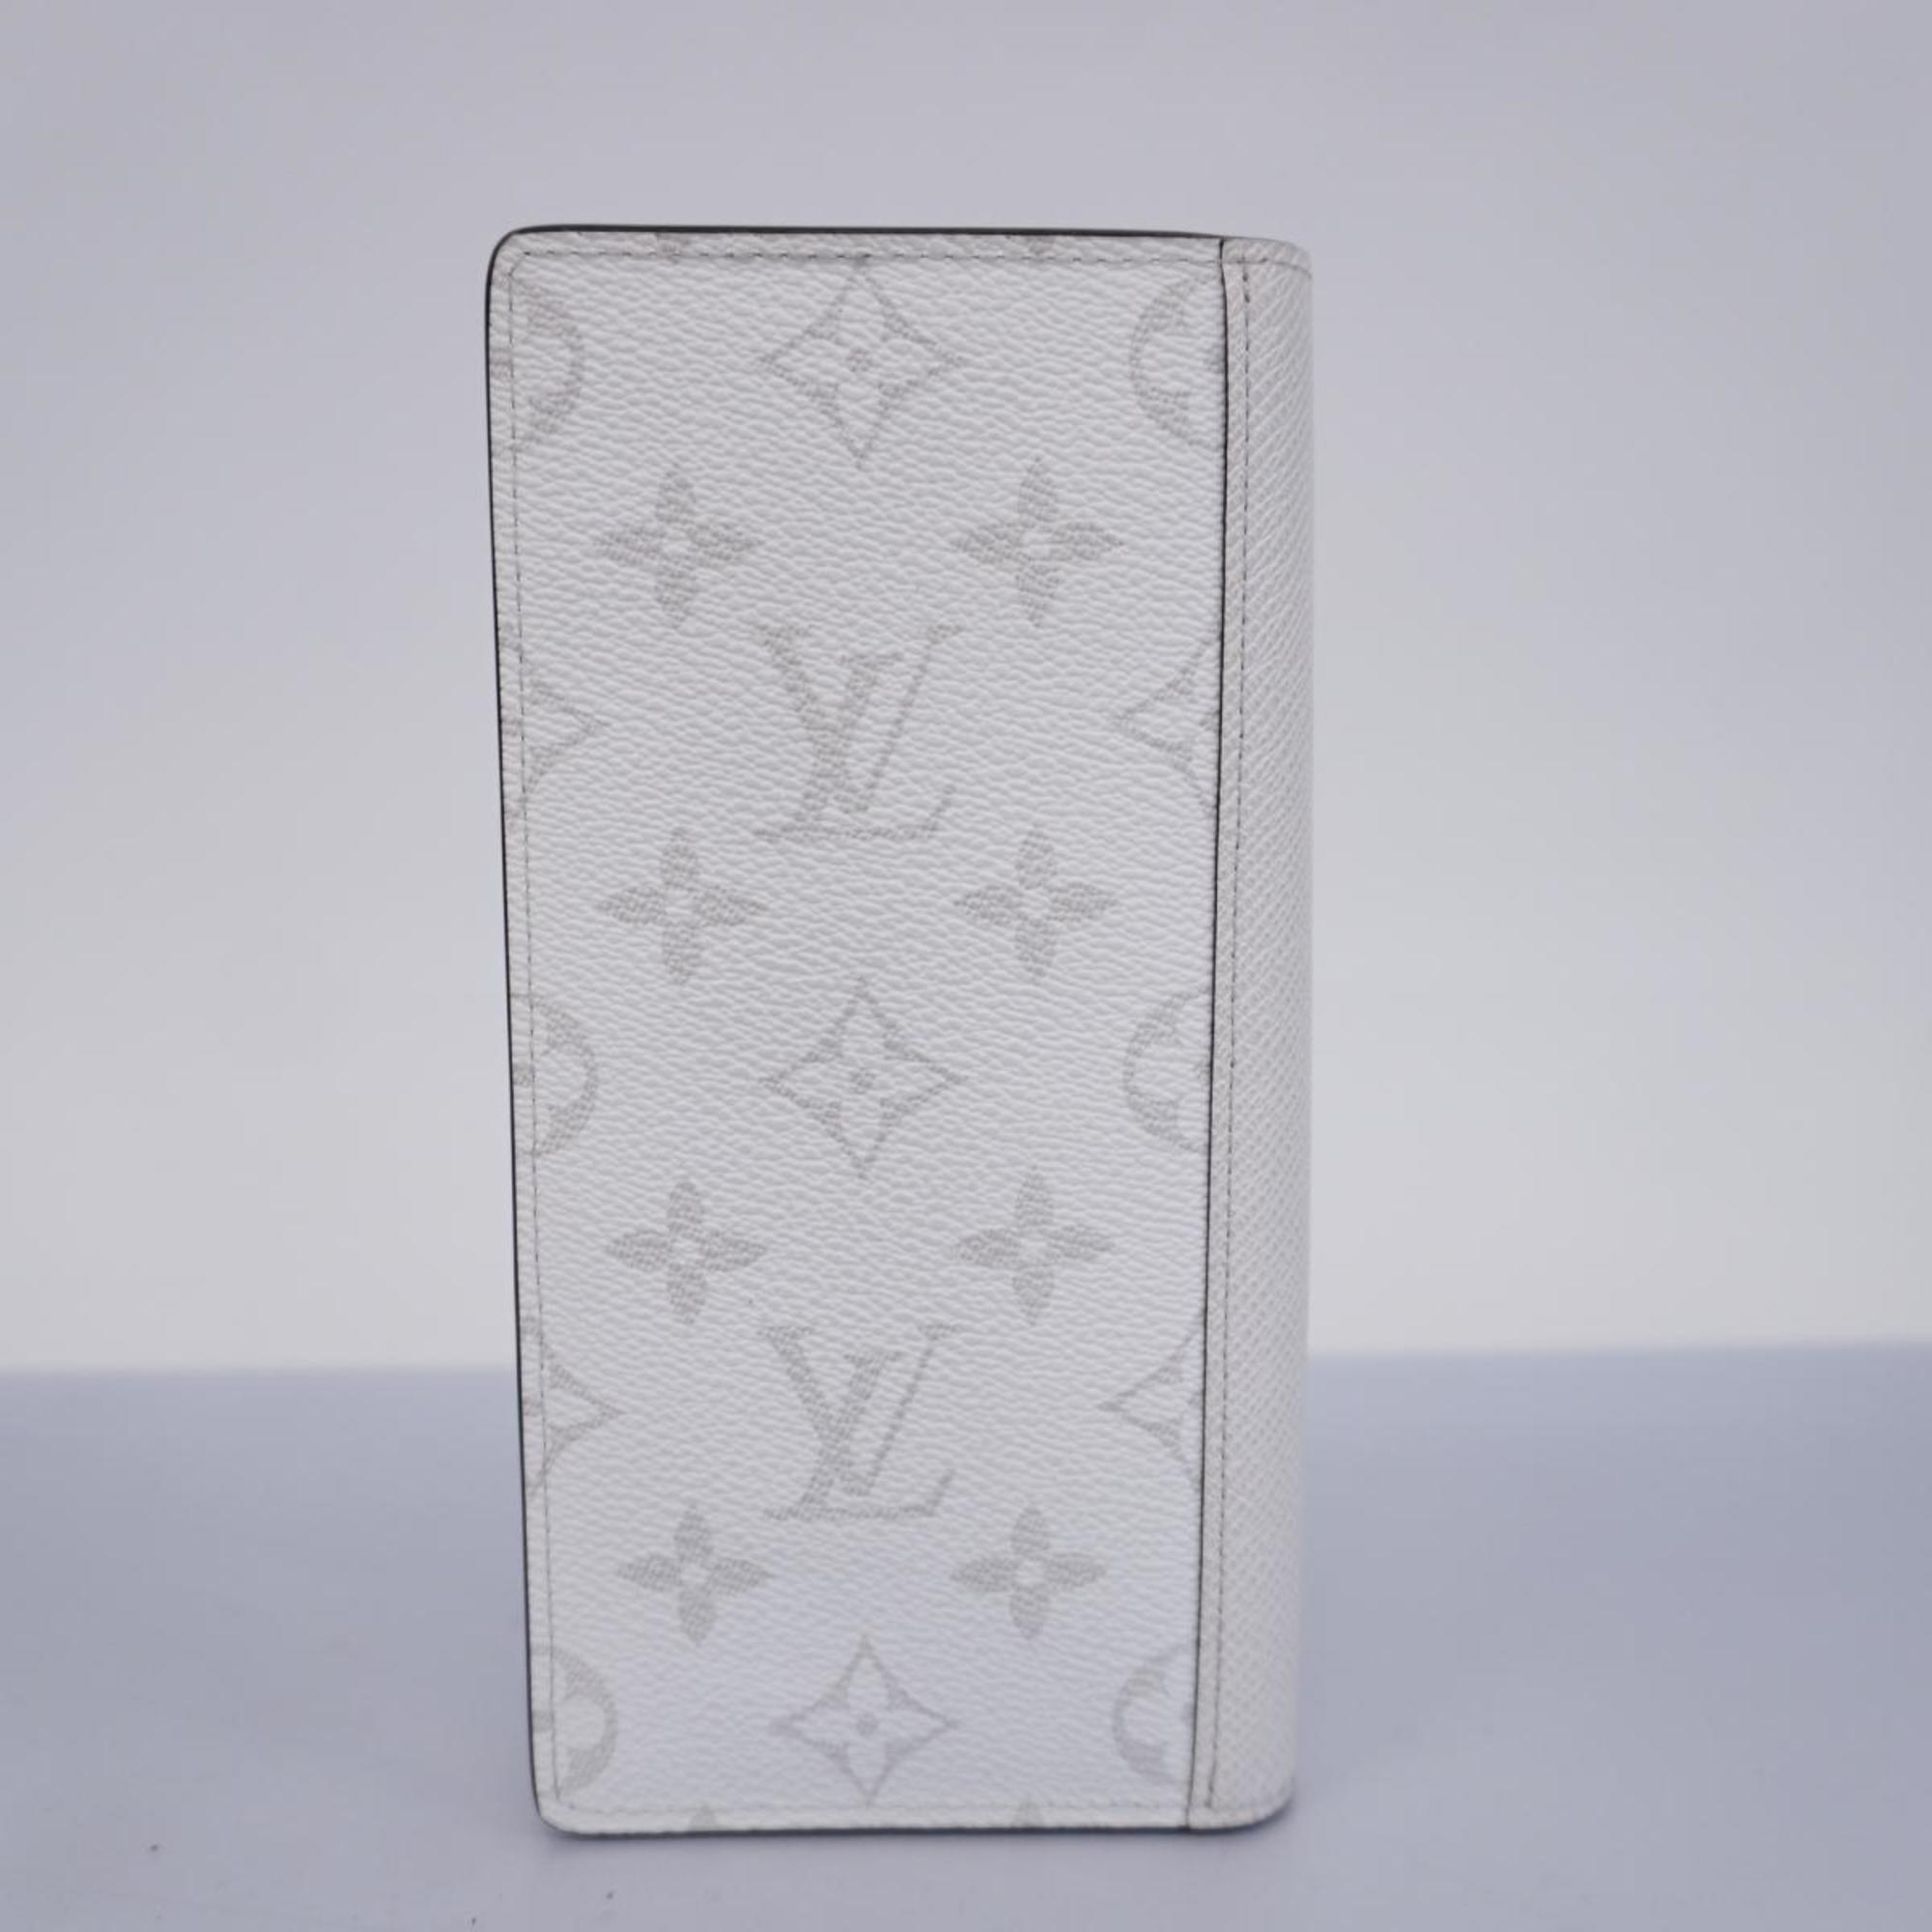 Louis Vuitton Long Wallet Taigarama Portefeuille Brazza M30298 Bron Men's